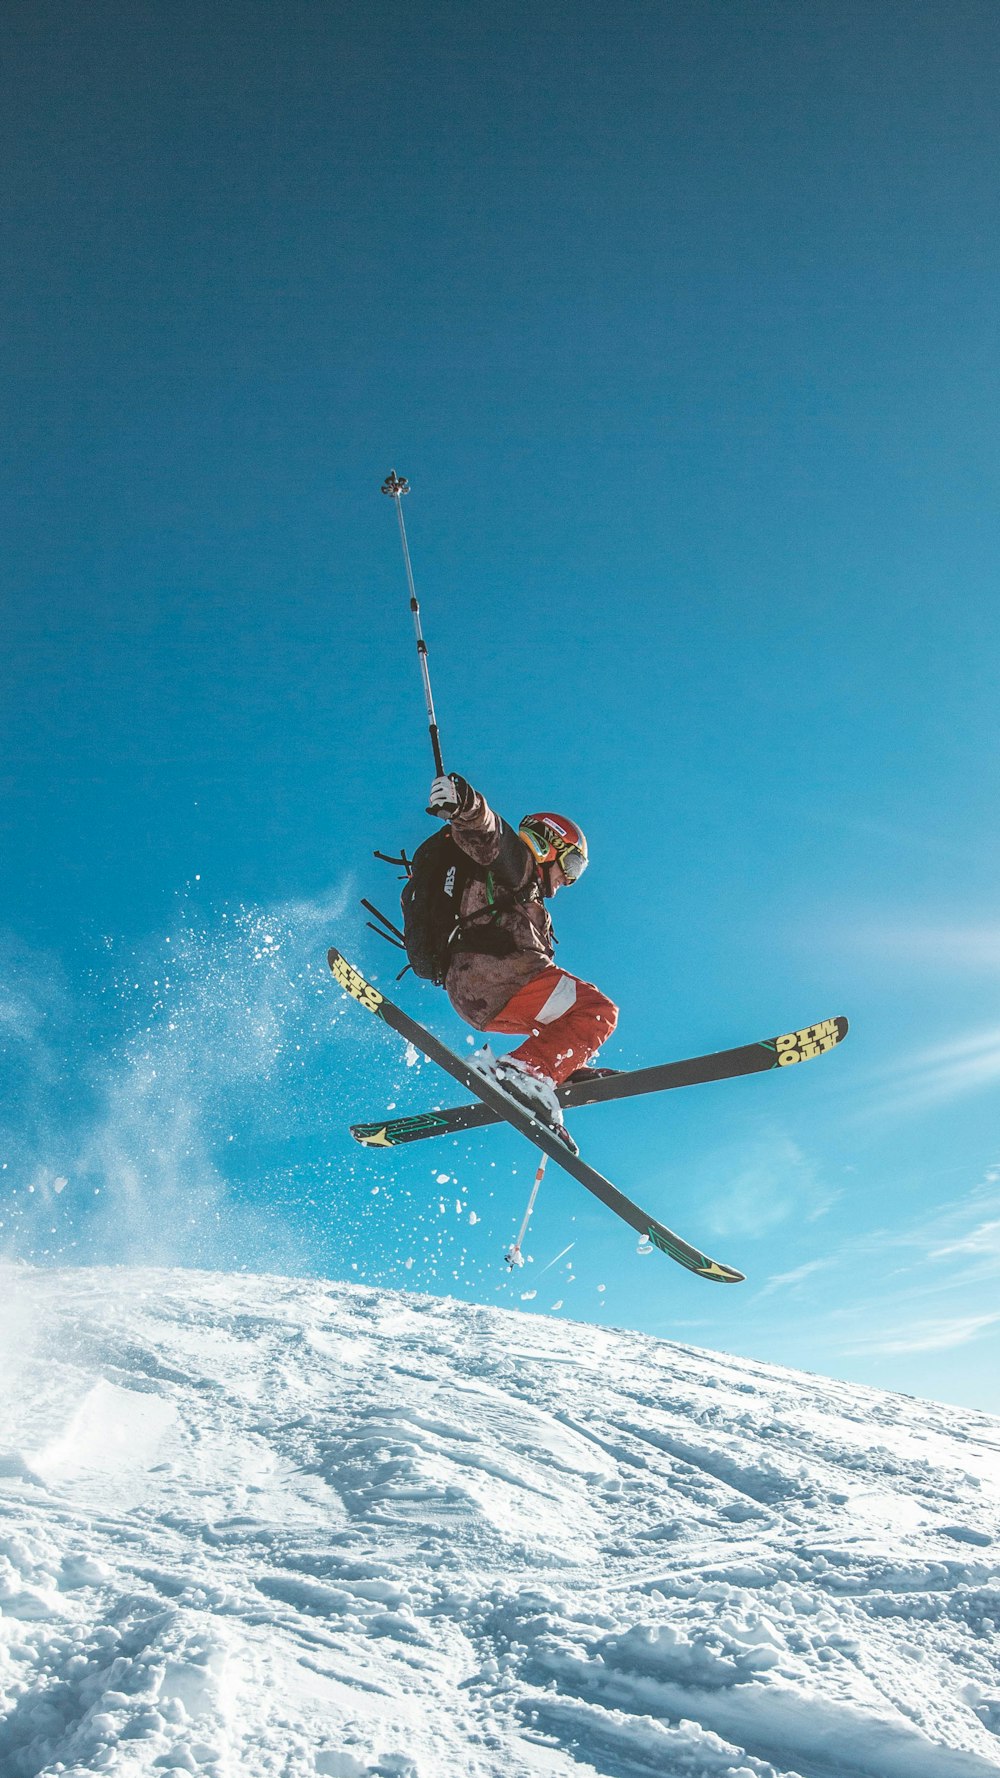 homme skiant sur terre